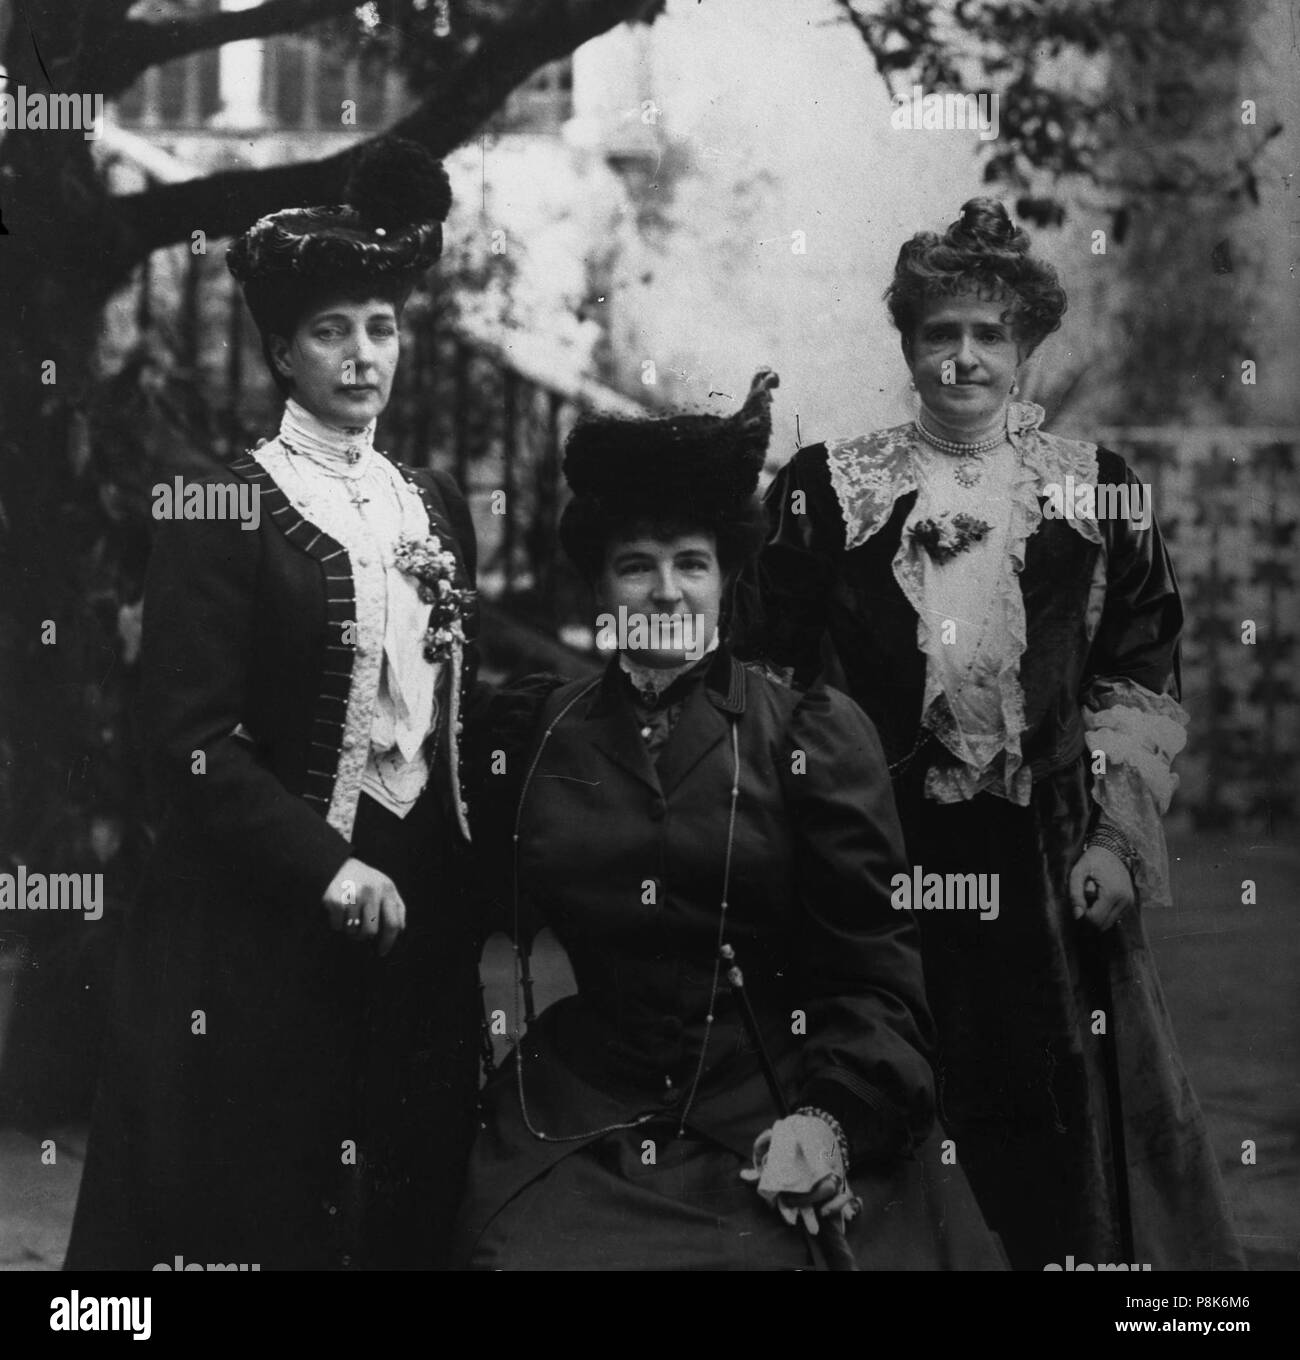 574 Visita da Rainha Alexandra de Inglaterra a Portugal, retrato com Dona Amélia e Dona Maria Pia (Mar 1905) Stock Photo